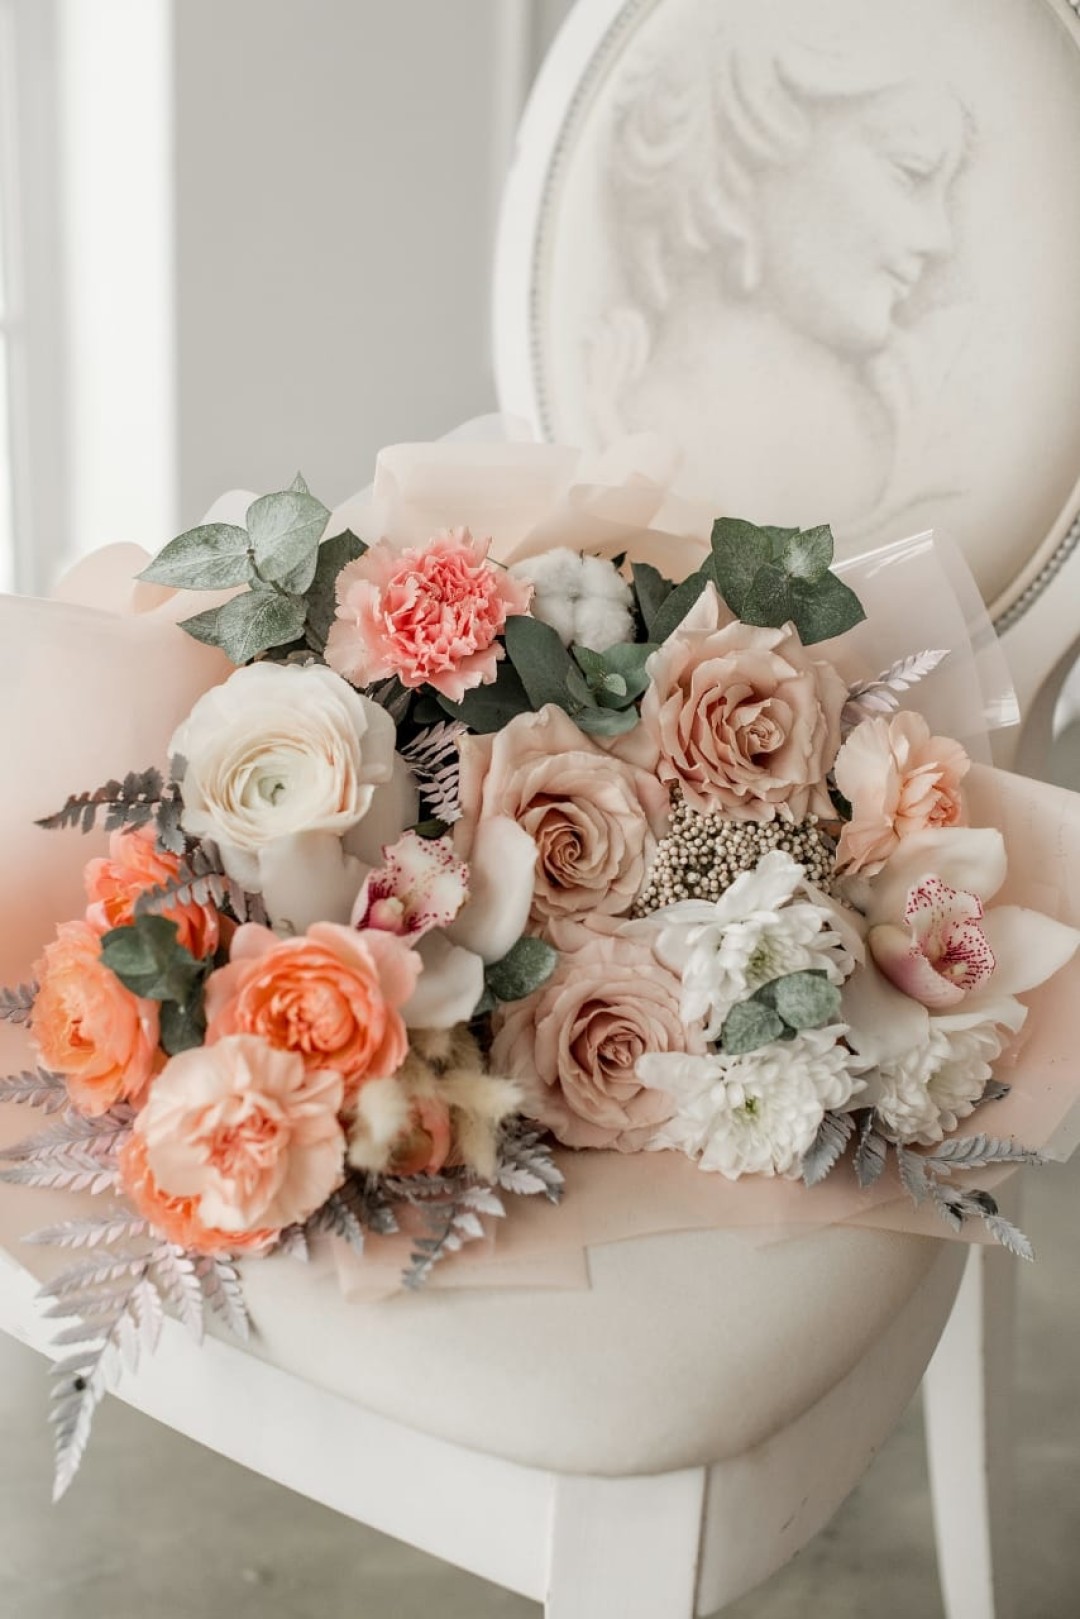 Как оформить свадебный зала цветами-8 идей для вашей свадьбы